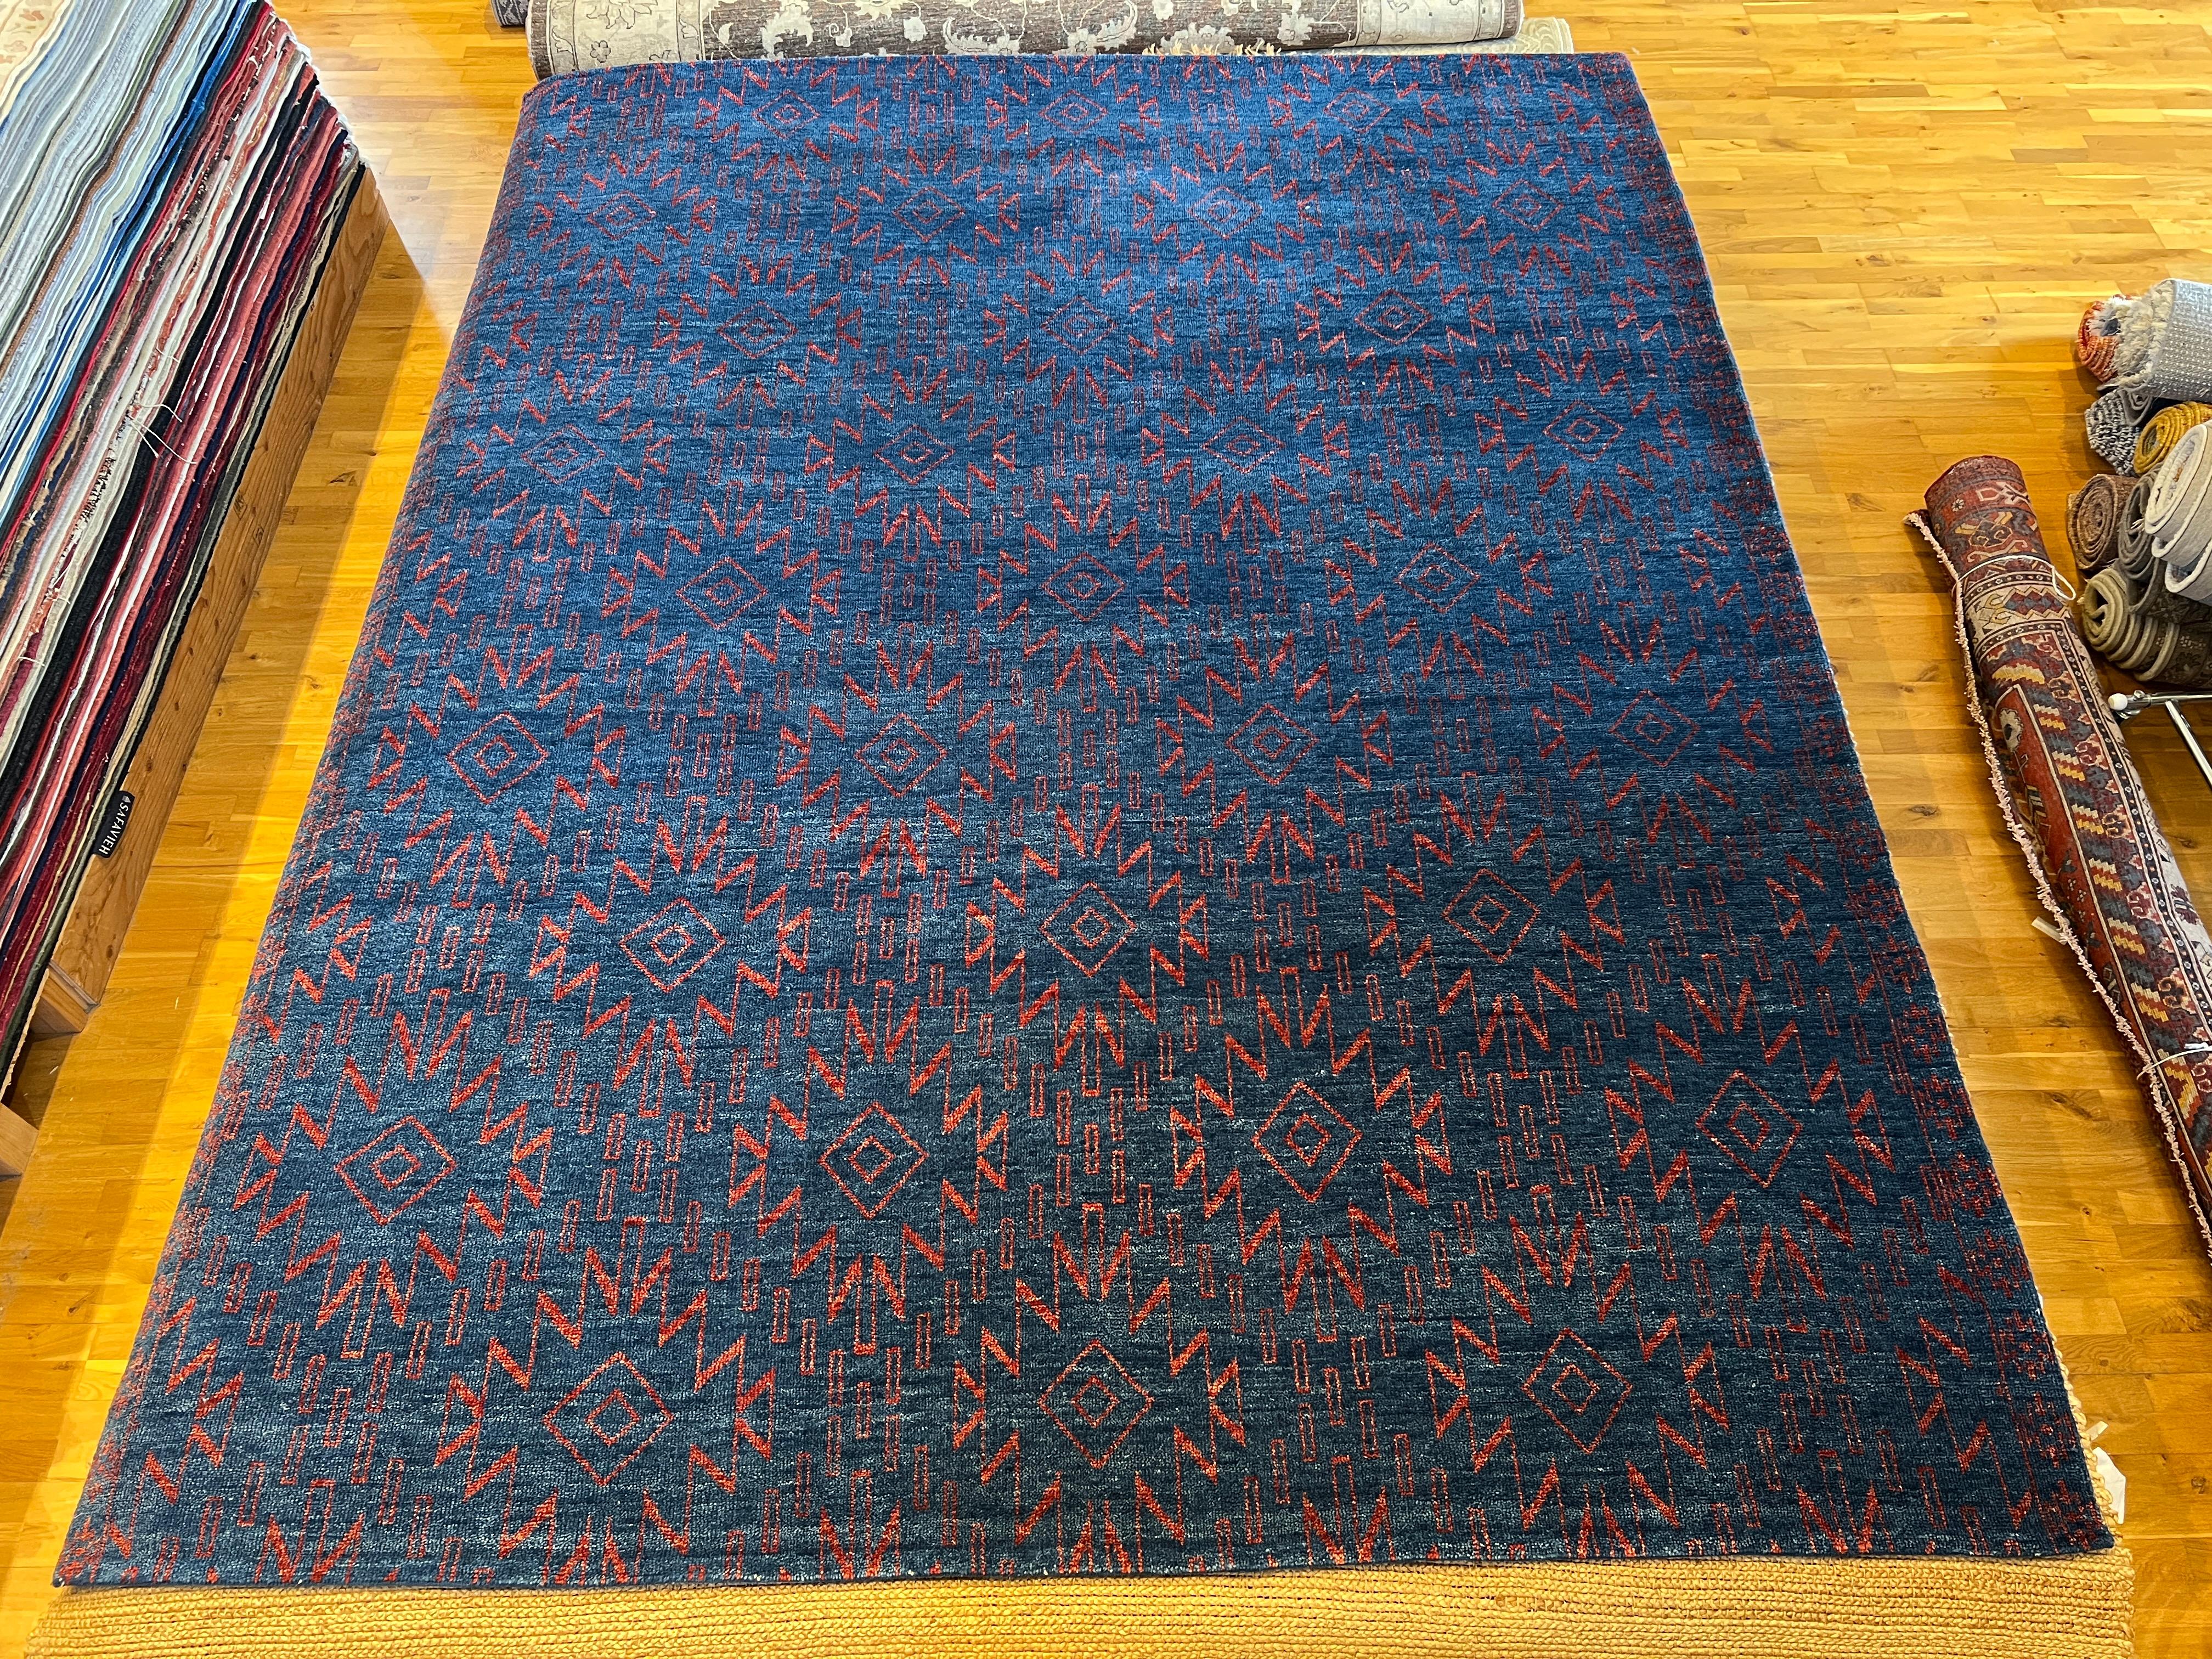 Ajoutez une touche de style moderne et tribal à votre intérieur avec notre tapis marocain 9'x12'. Le fond bleu vibrant et l'accent rouge feront sensation dans n'importe quelle pièce. Doux et durable, ce tapis ne manquera pas d'égayer votre espace et